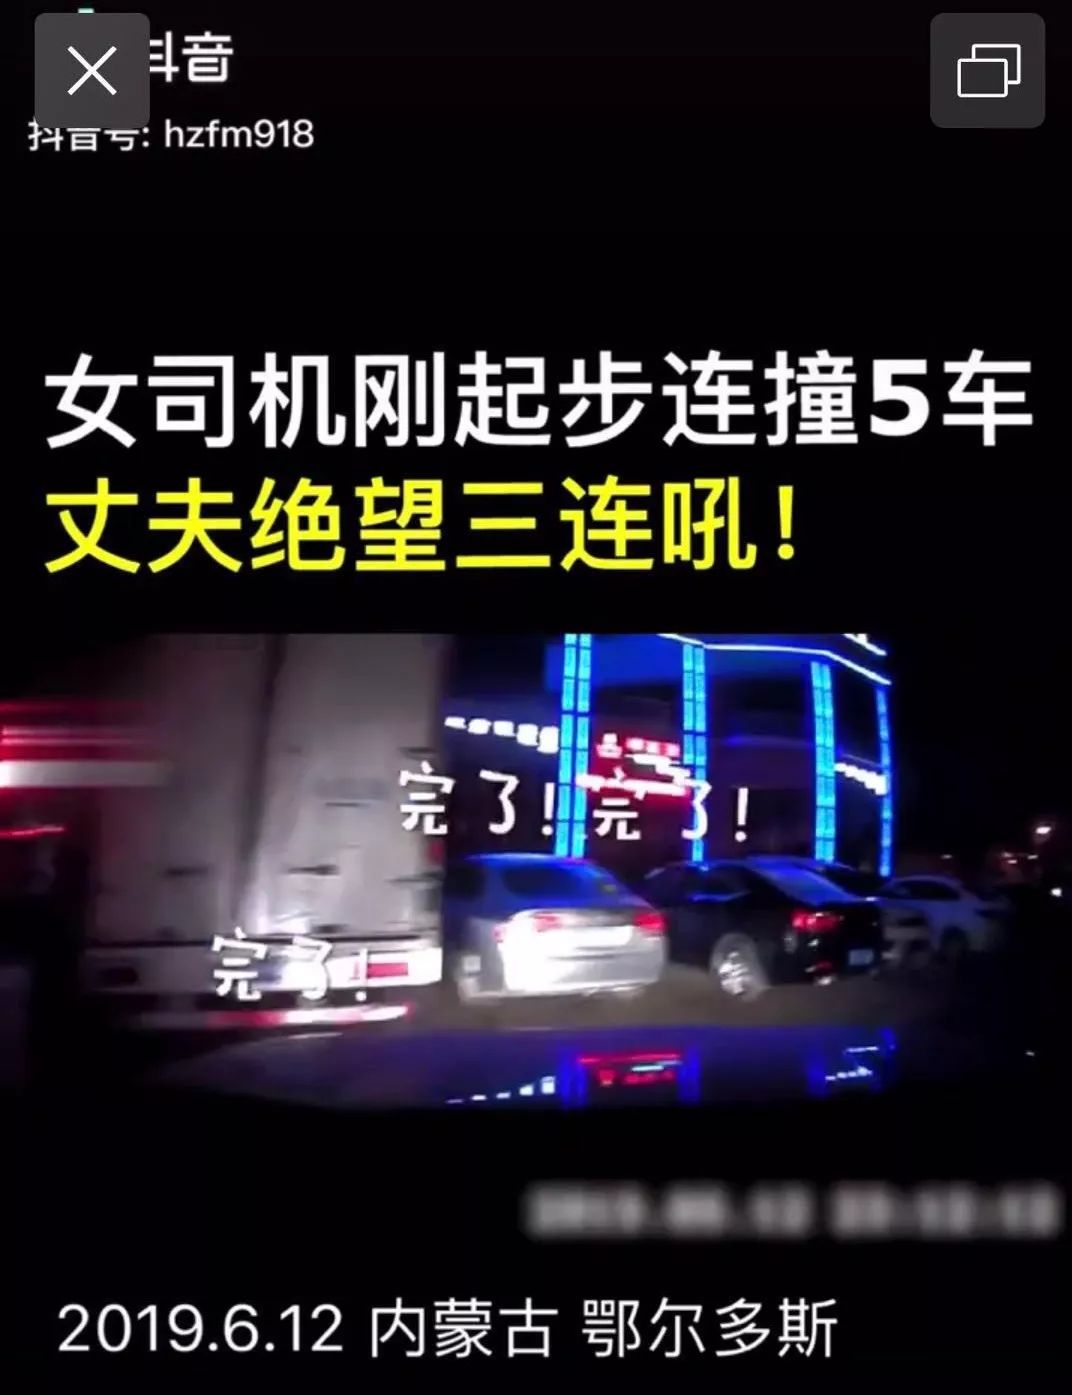 视频东胜一女司机刚起步5车连撞老公绝望三连吼